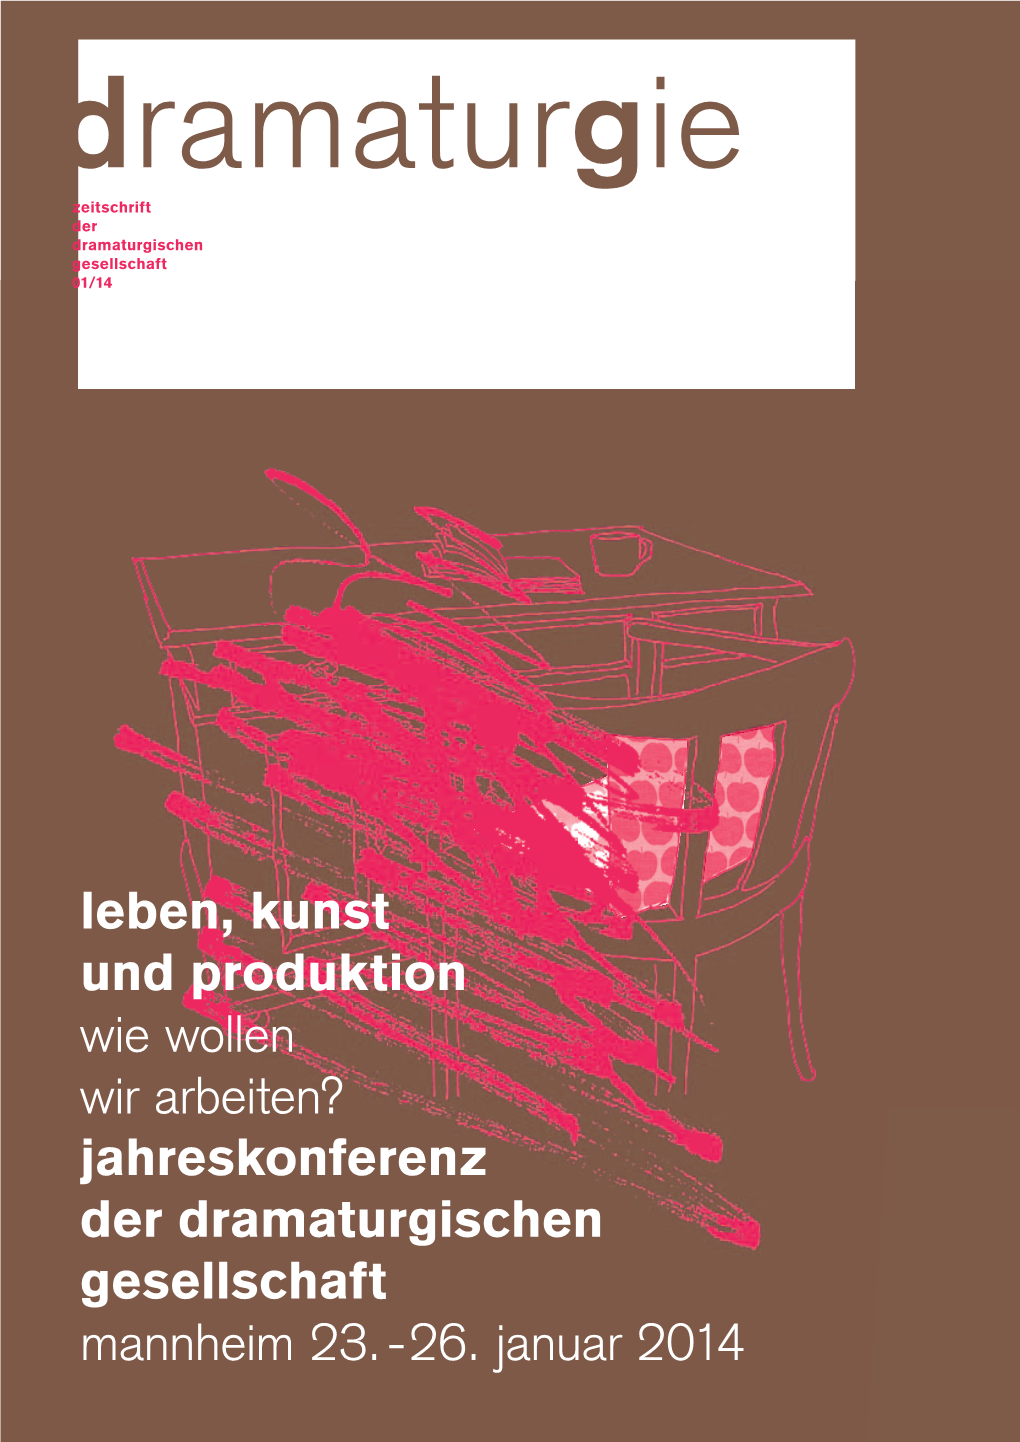 Jahreskonferenz Der Dramaturgischen Gesellschaft Mannheim 23.-26